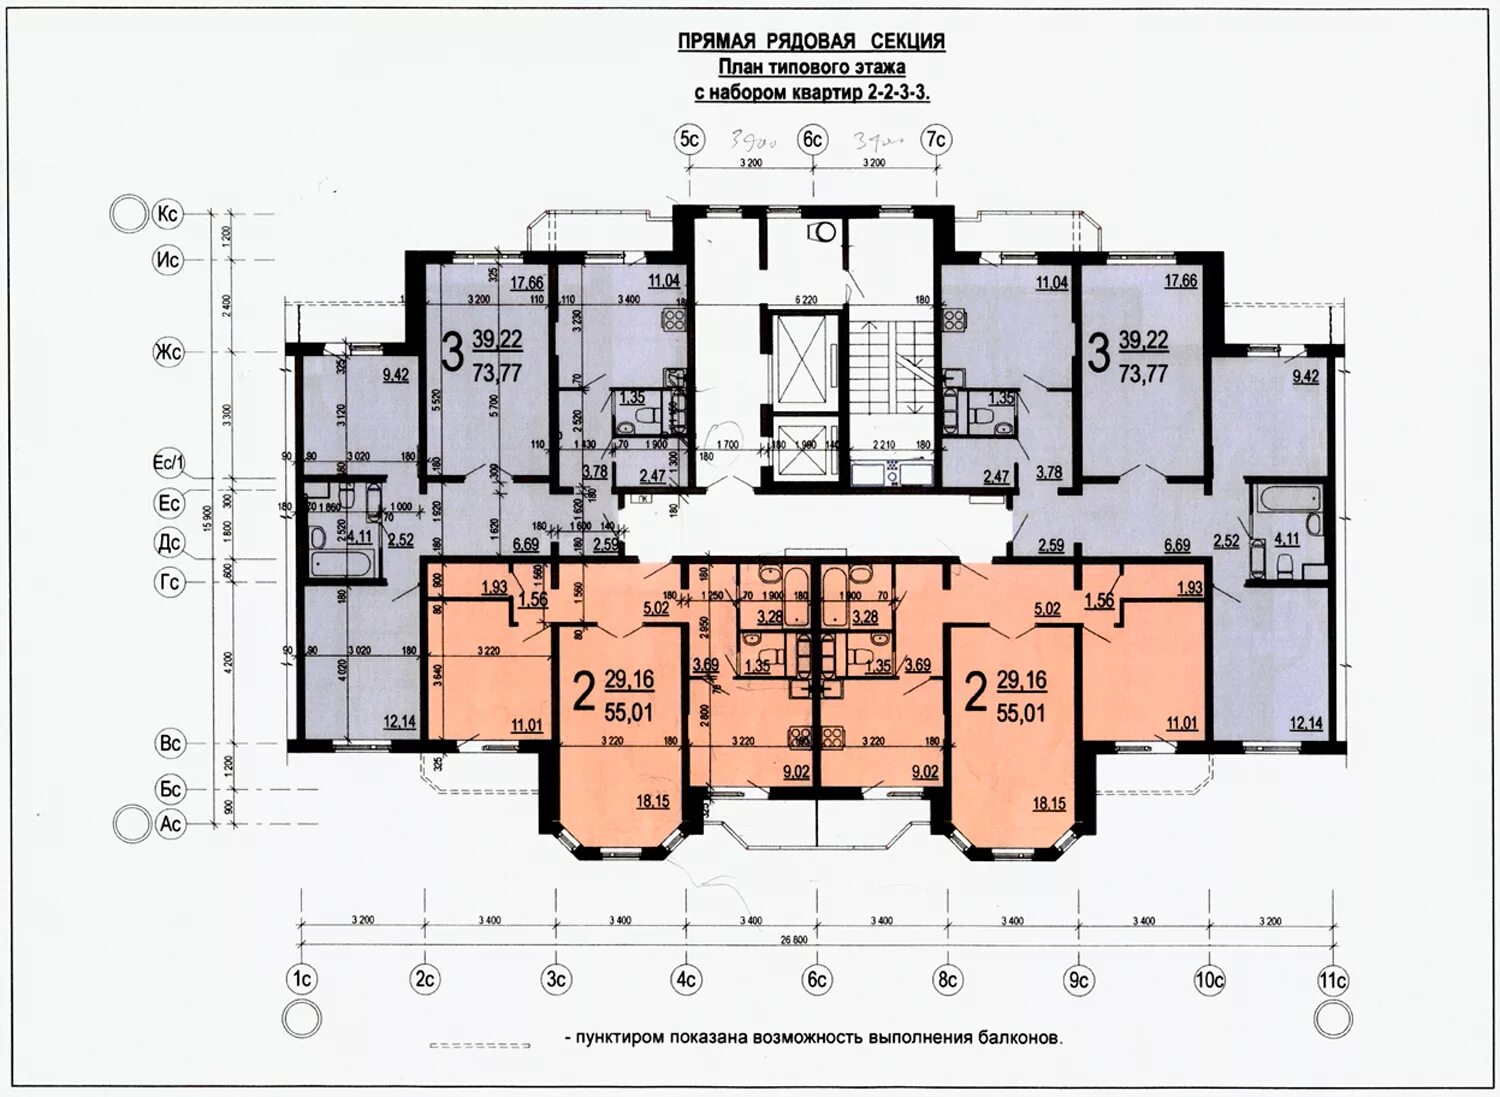 План типового этажа секционного дома. Планировка секционного 2 подъезда. Планировка многоэтажного жилого дома 16 этажей. Поэтажный план многоквартирного жилого дома.